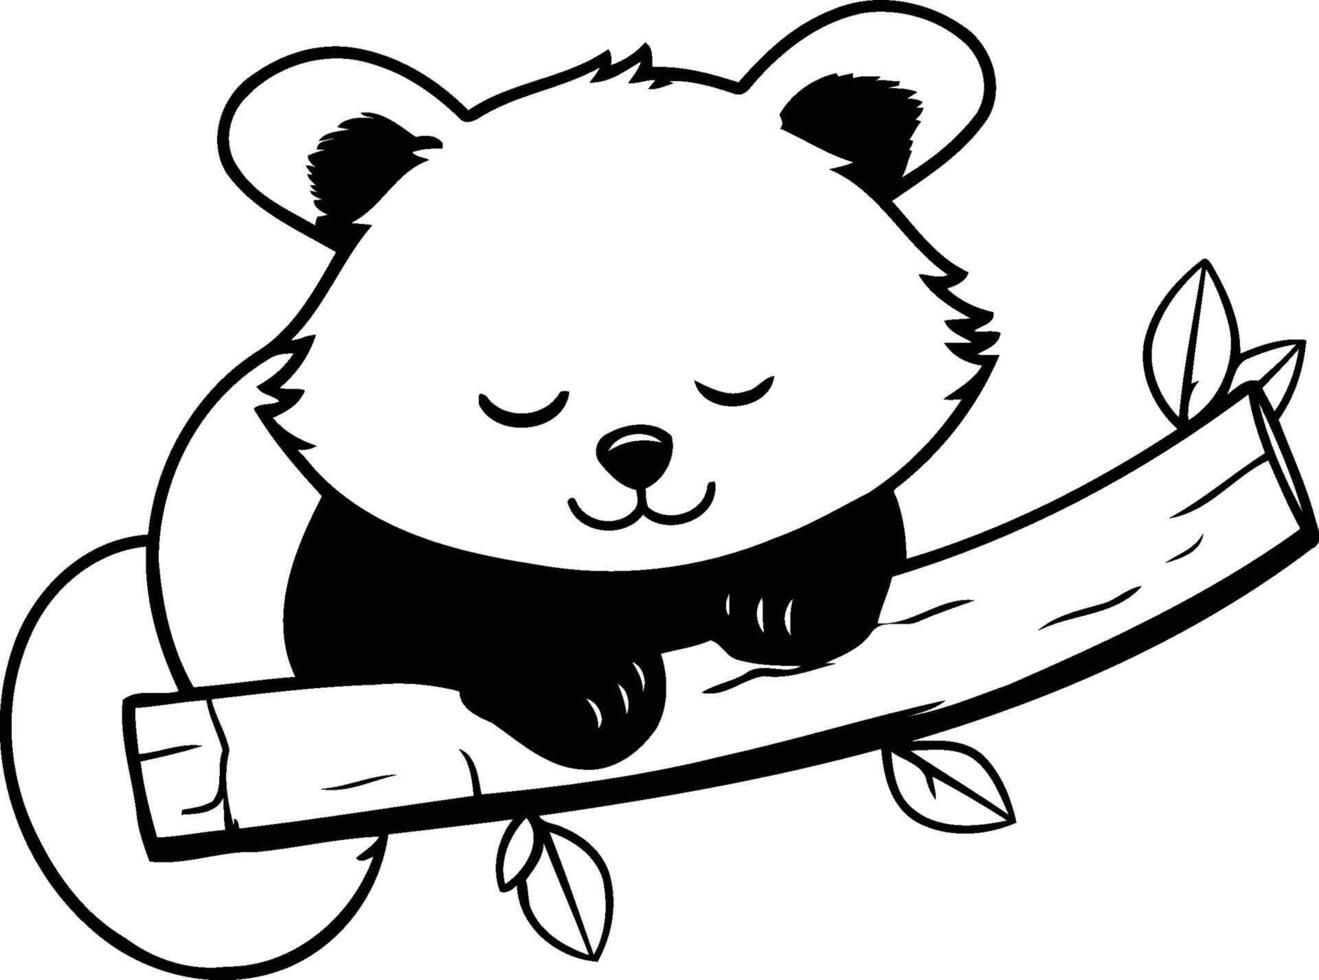 süß rot Panda Schlafen auf ein Ast. Vektor Illustration.